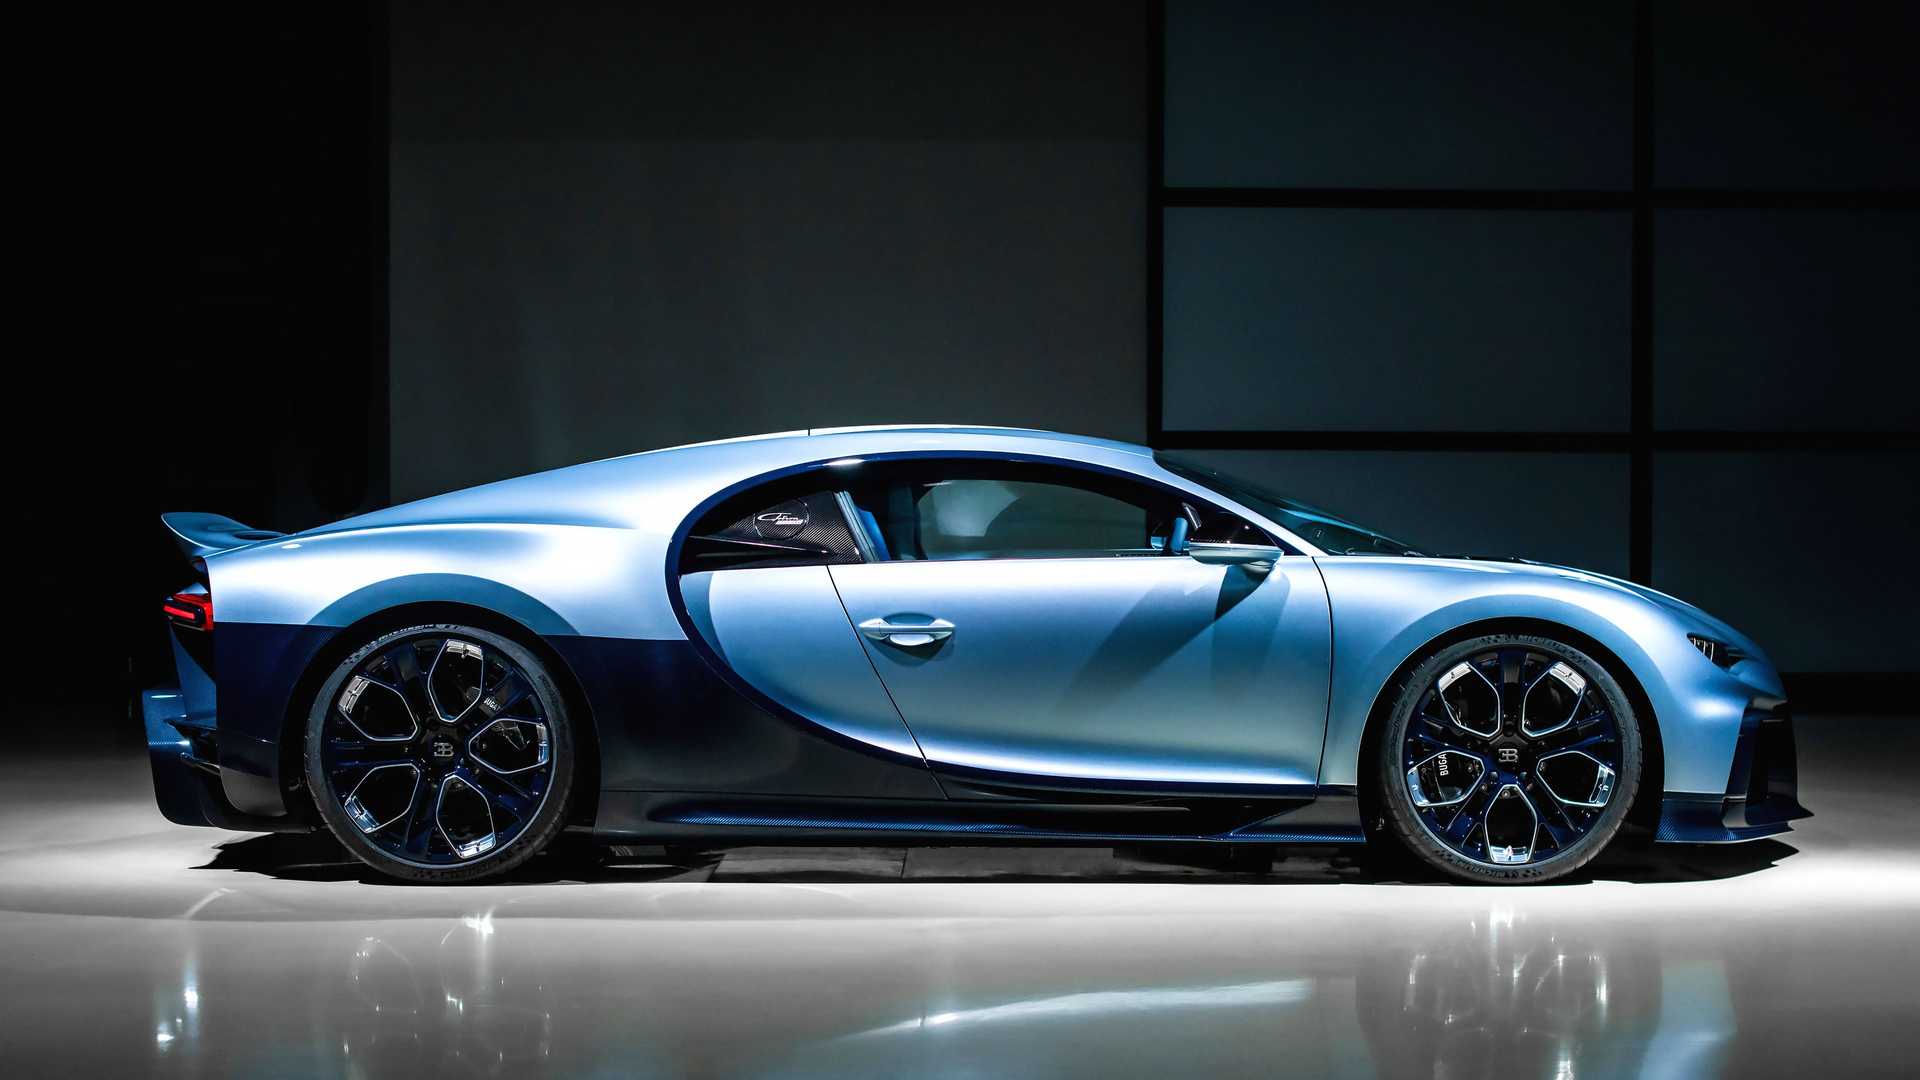 Vì sao Bugatti nói chỉ làm 500 chiếc Chiron nhưng lại có chiếc thứ 501? - Ảnh 2.